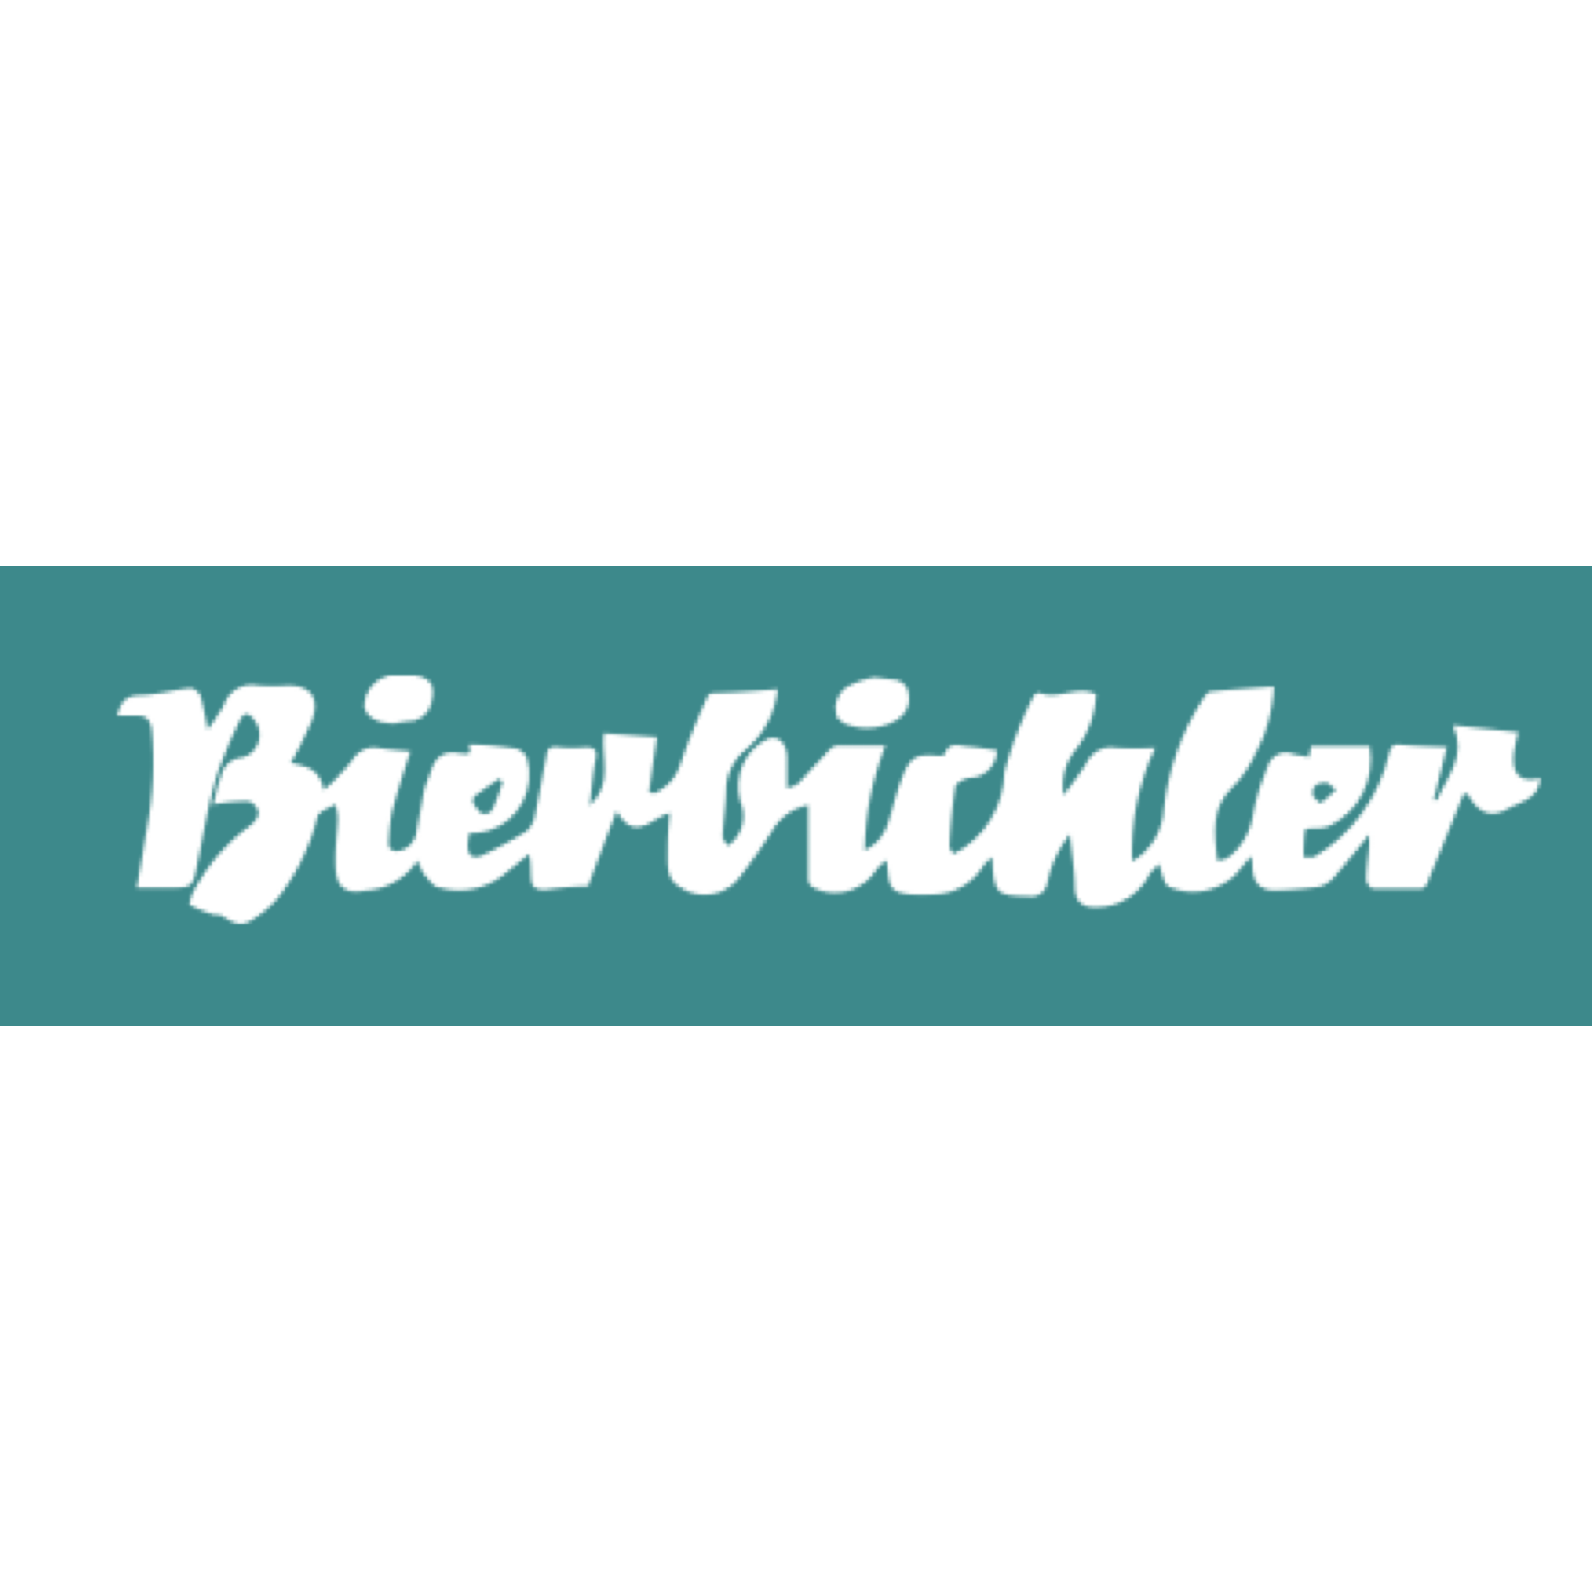 Fischbraterei Bierbichler GmbH & Co. KG - Restaurant - Rosenheim - 0172 5930100 Germany | ShowMeLocal.com